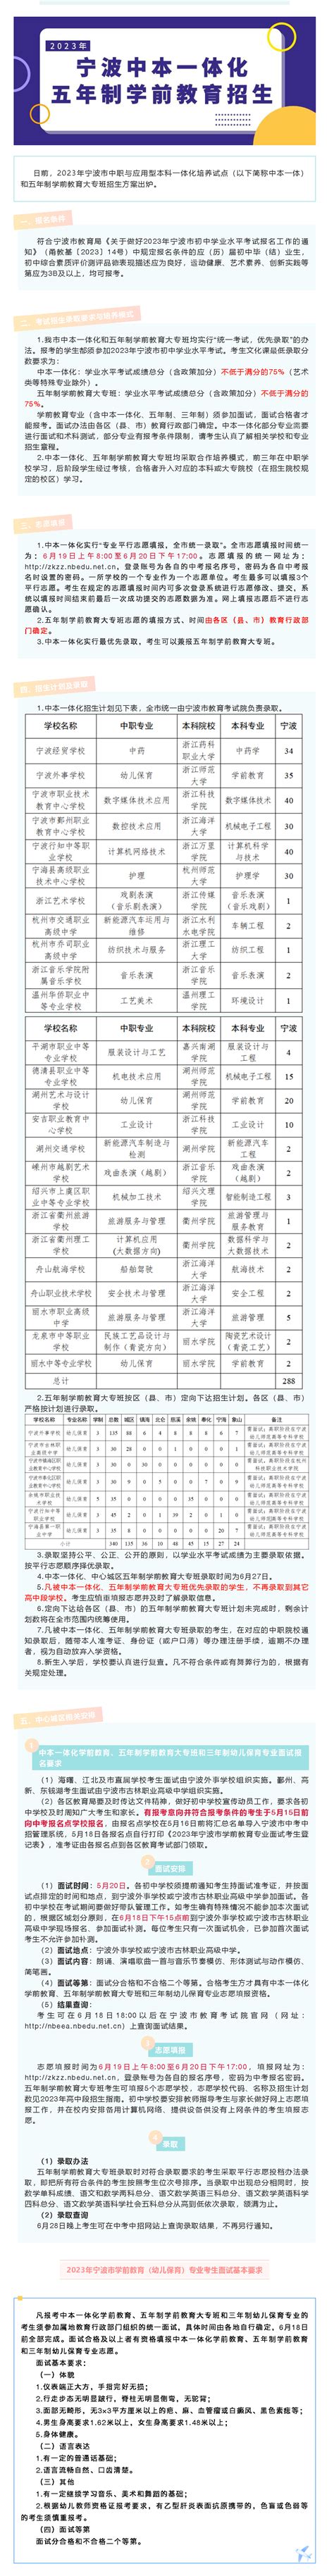 2021年宁波中本一体化、中心城区五年制学前教育专业录取名单-新闻中心-中国宁波网